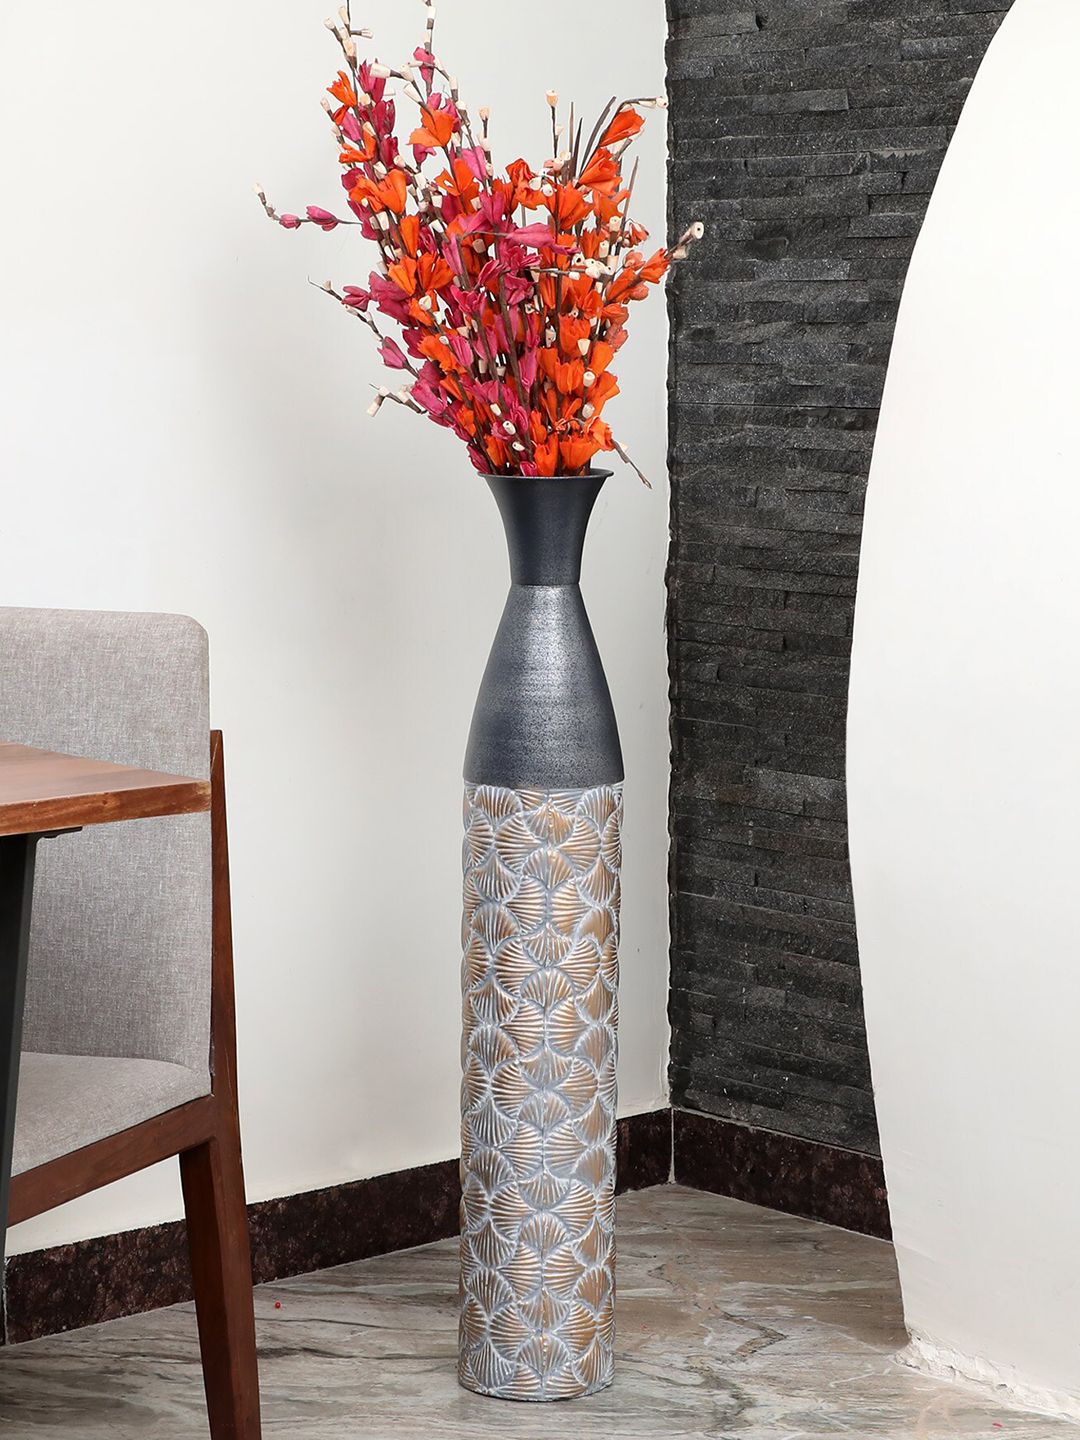 vedas Metalic Multi-Coloured Textured Flower Vase Price in India